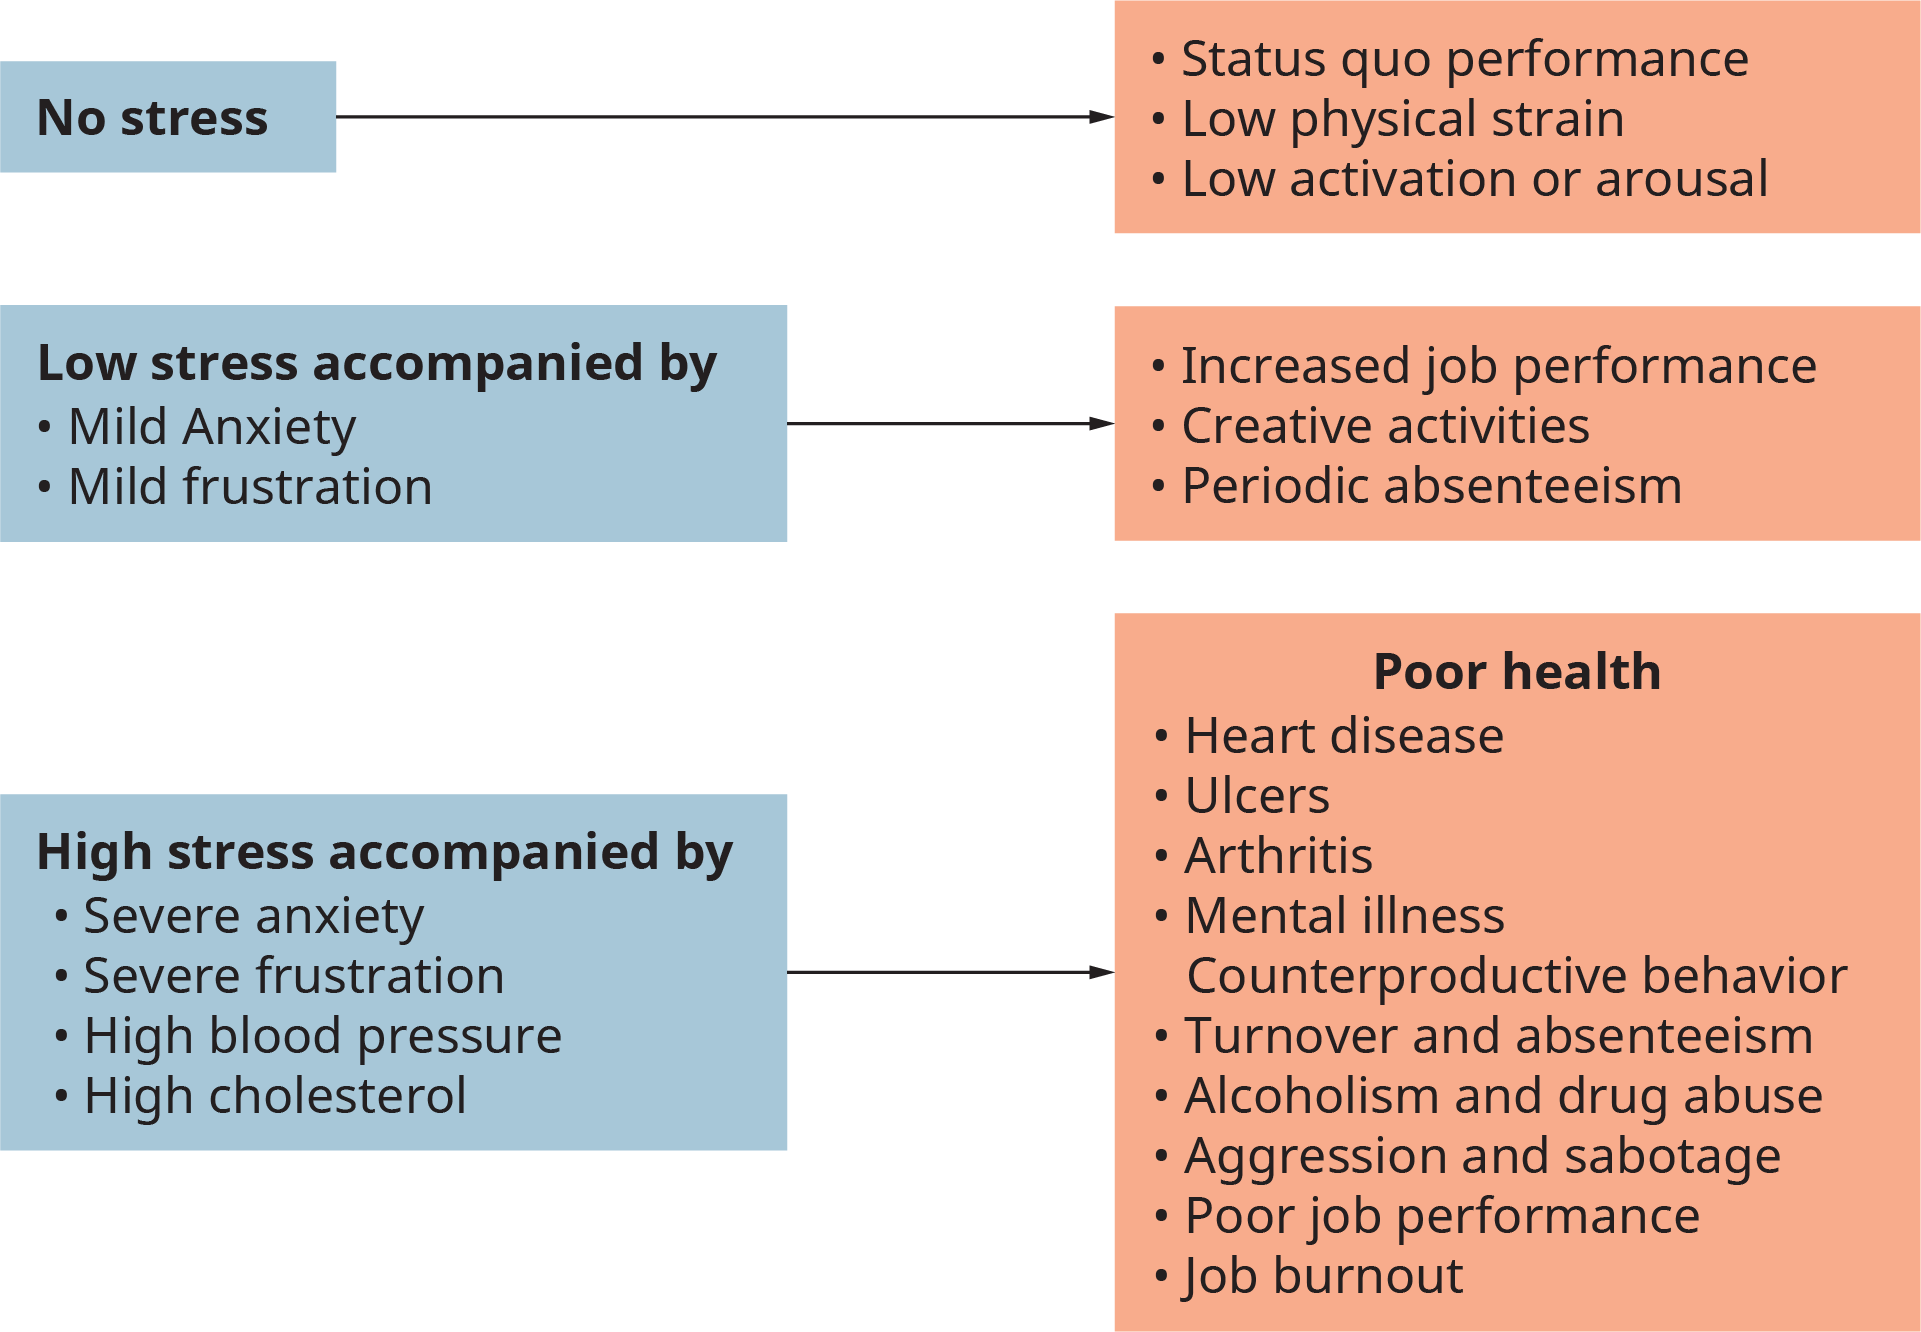 Une illustration montre les principales conséquences à trois niveaux d'intensité différents du stress lié au travail.